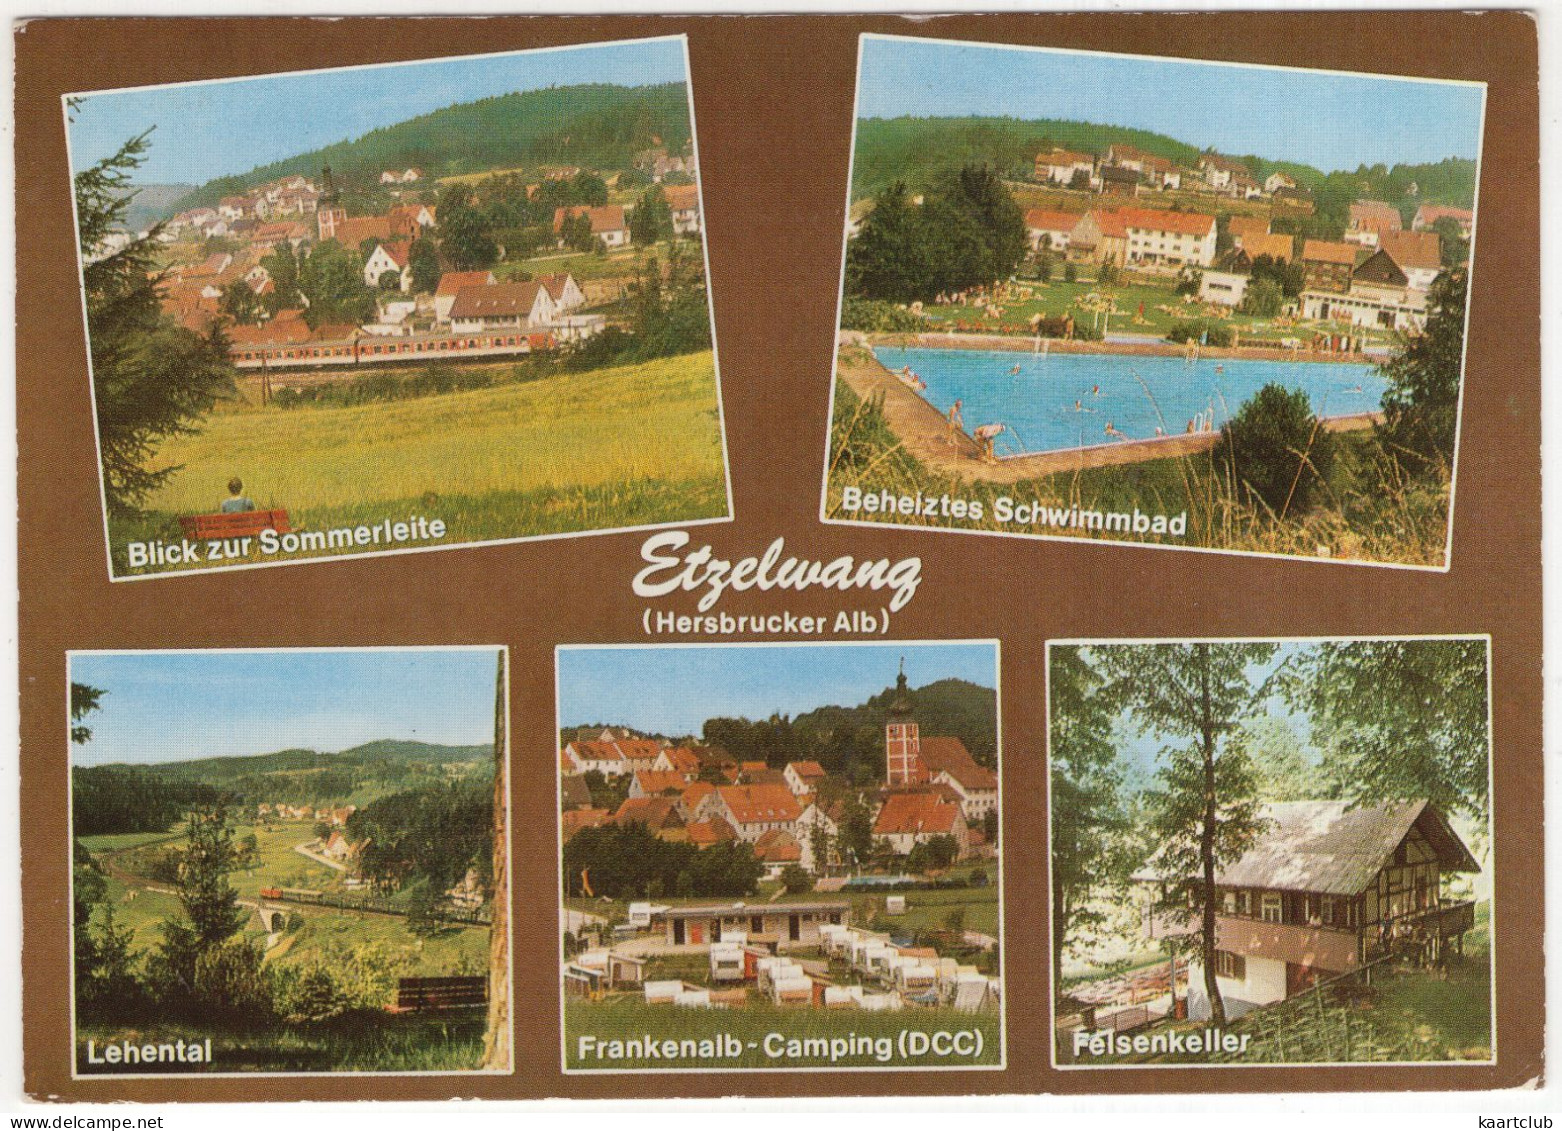 Etzelwang (Hersbrucker Alb) - (Deutschland)  - U.a. Schwimmbad & Frankenalb-Camping (DCC) - Amberg